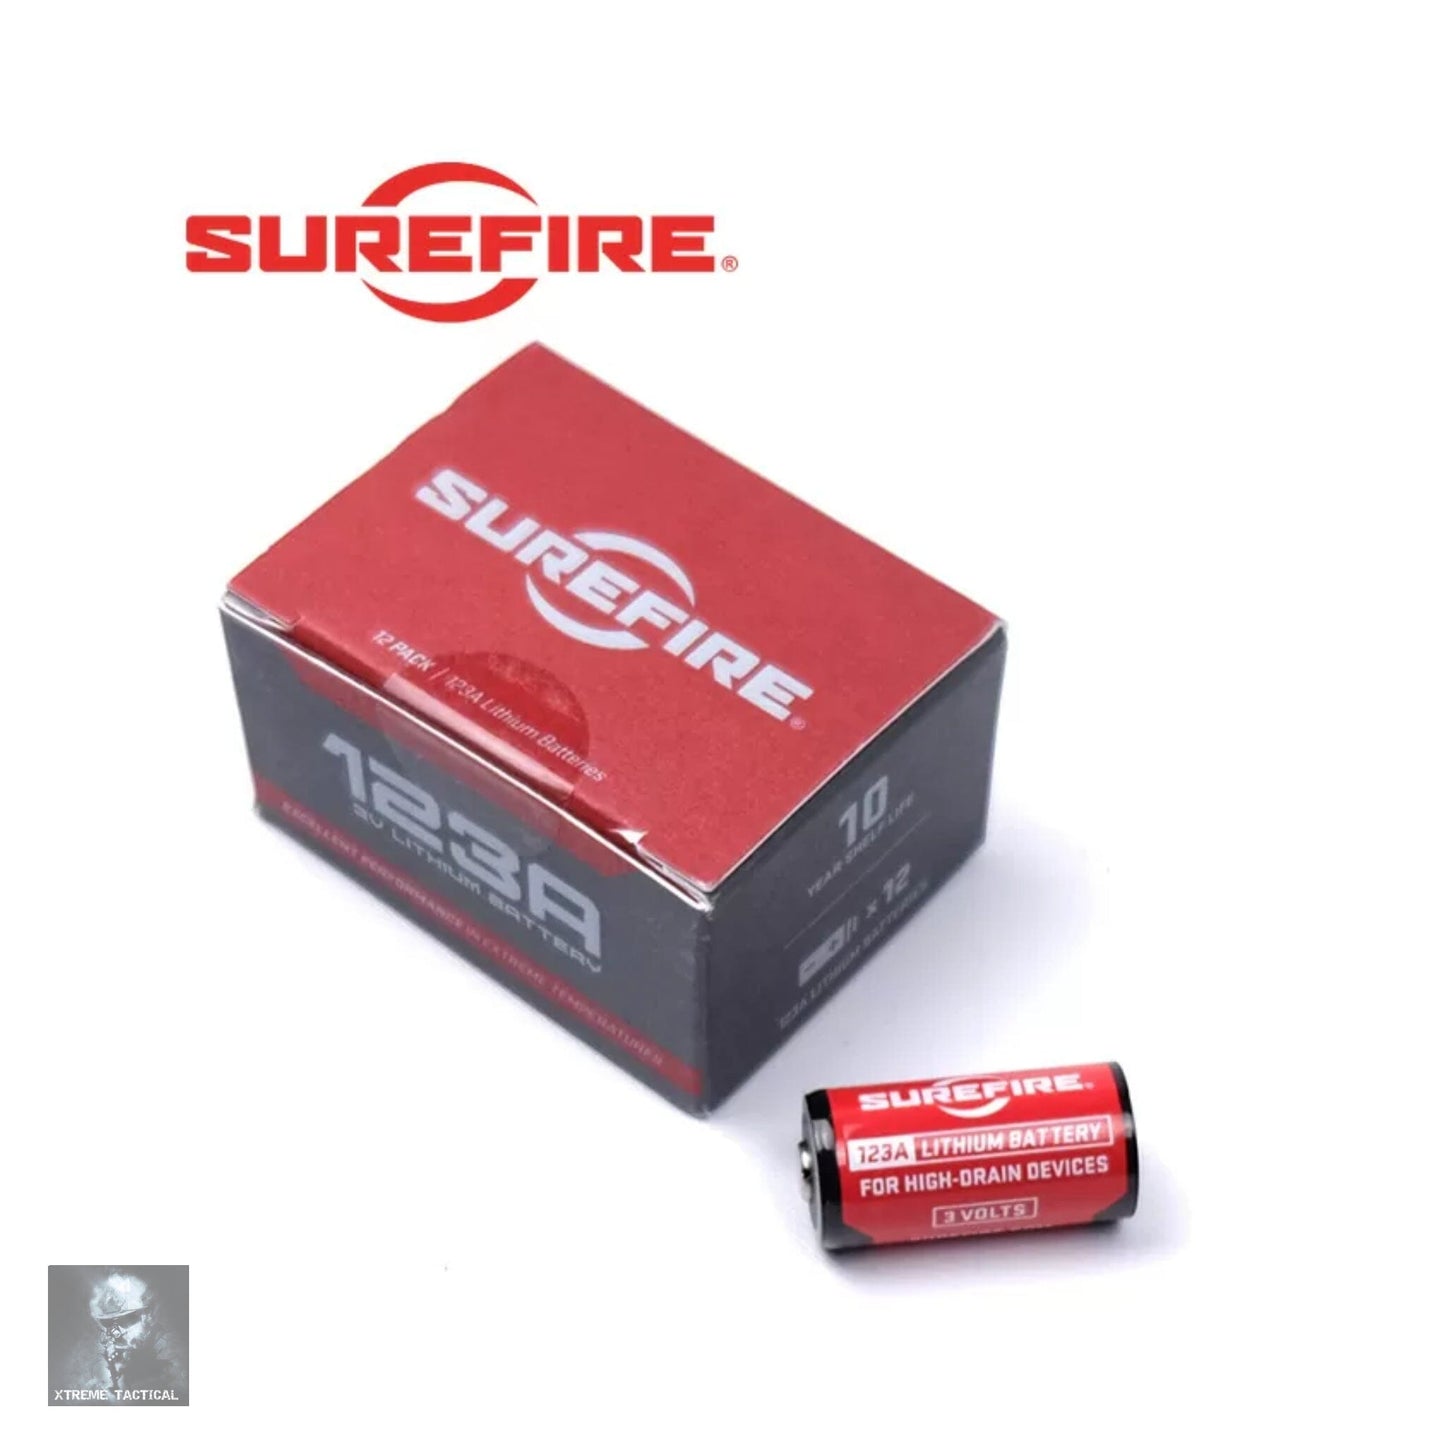 SureFire CR123A Lithium Batteries Box of 12 - SF12-BB Weapon Light Accessories SureFire 